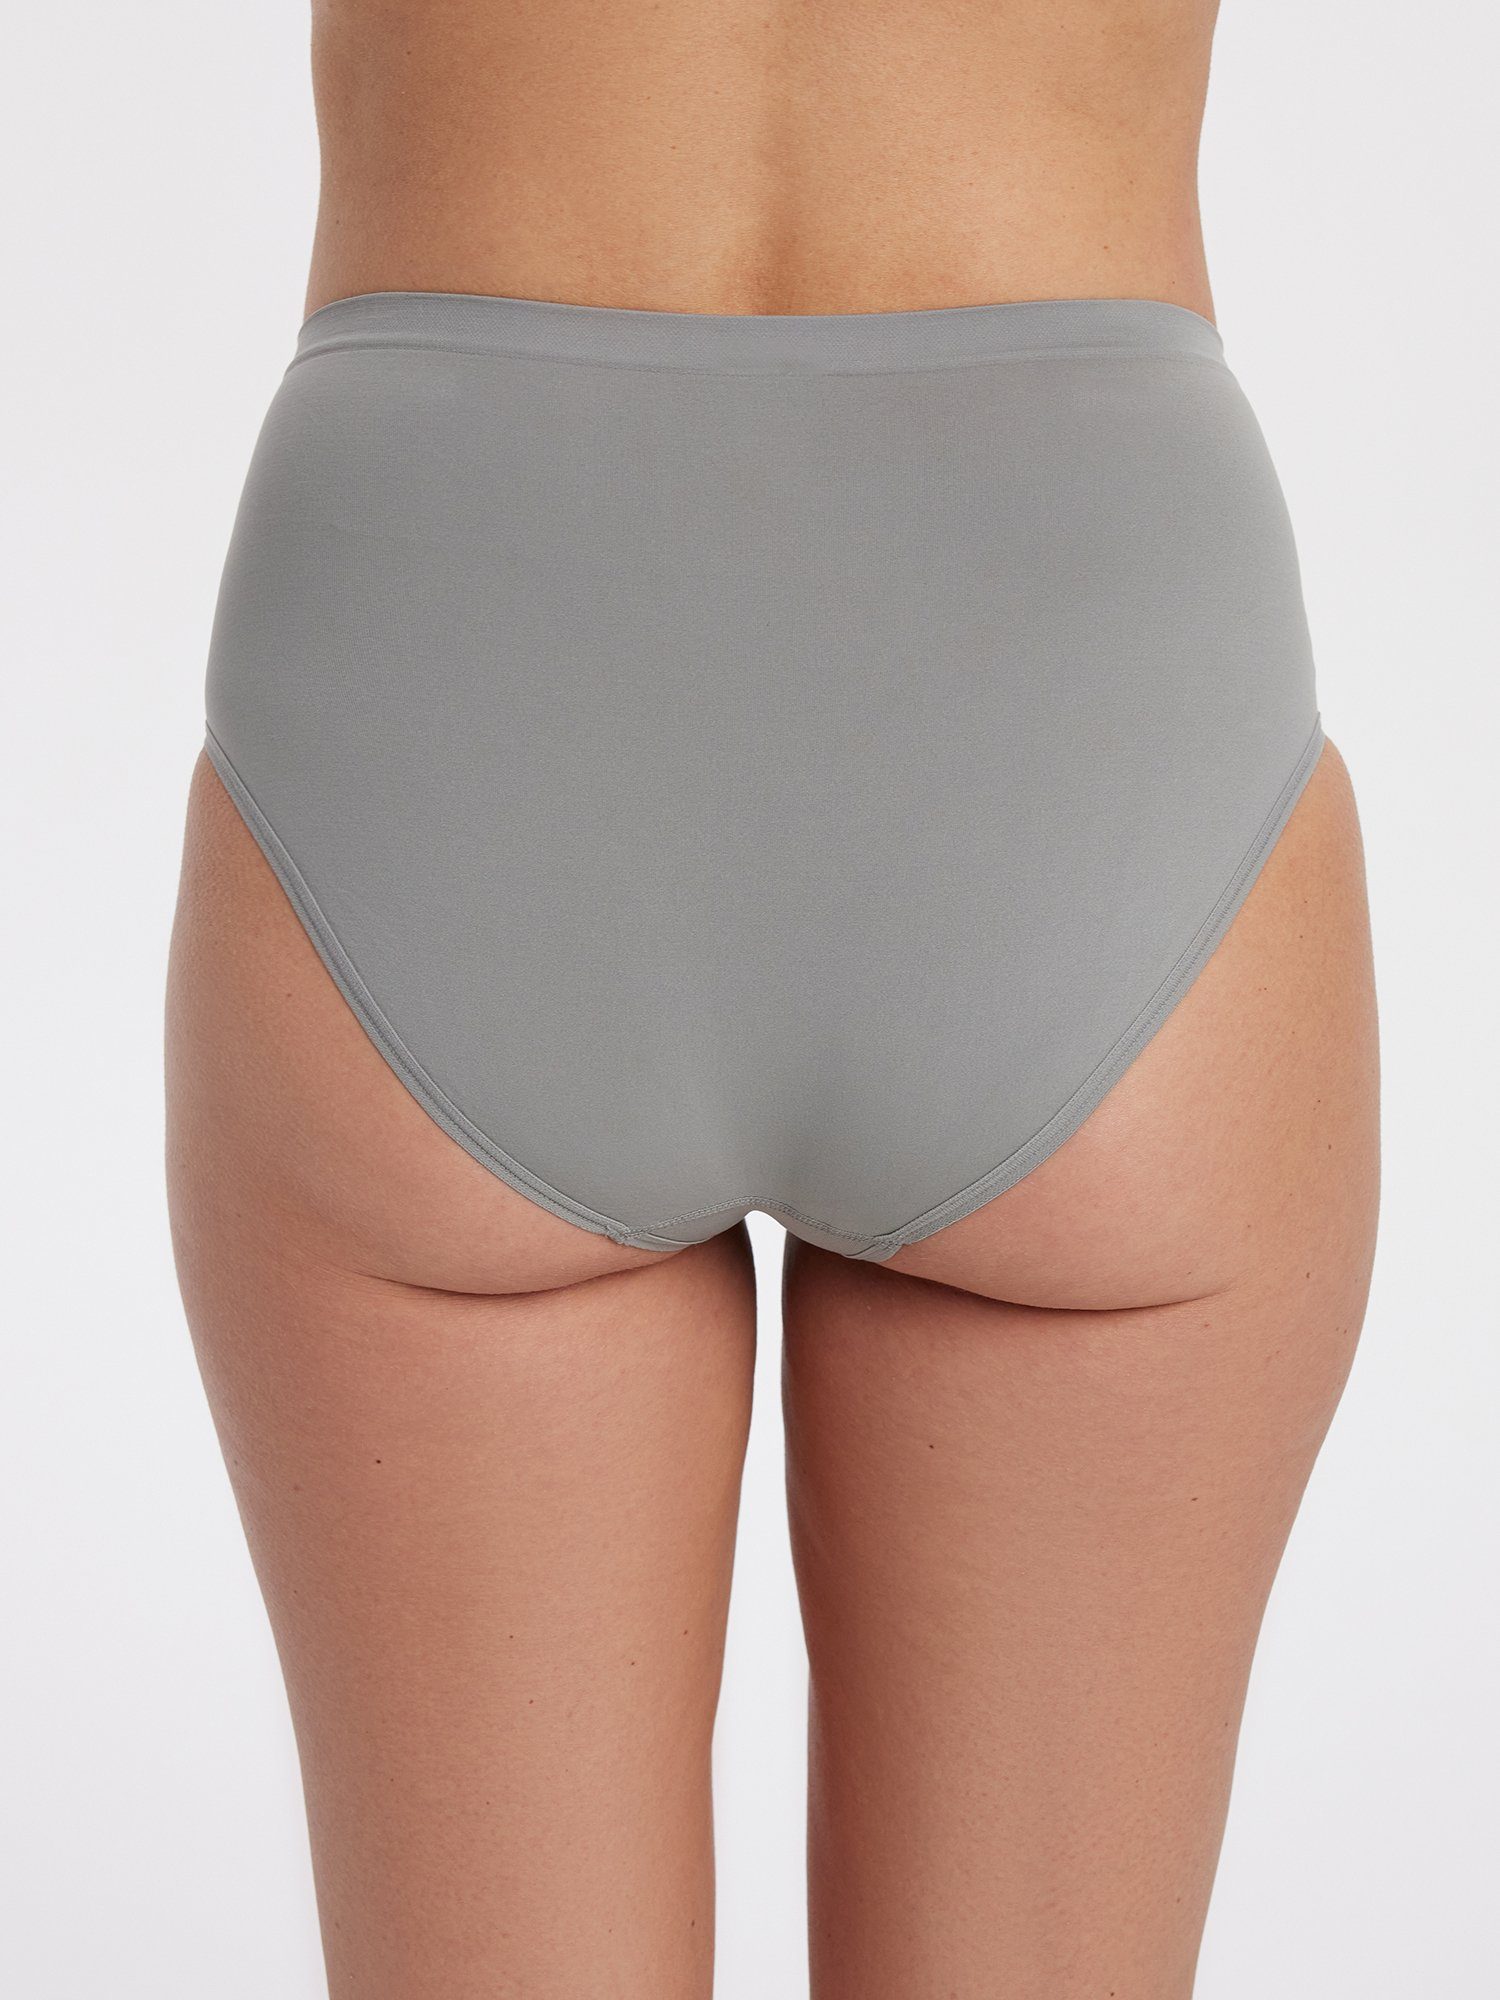 Panty Slip nahtloser mit Pure Verarbeitung elastisch silber-grau 2-teilig) Shape (2er-Set,